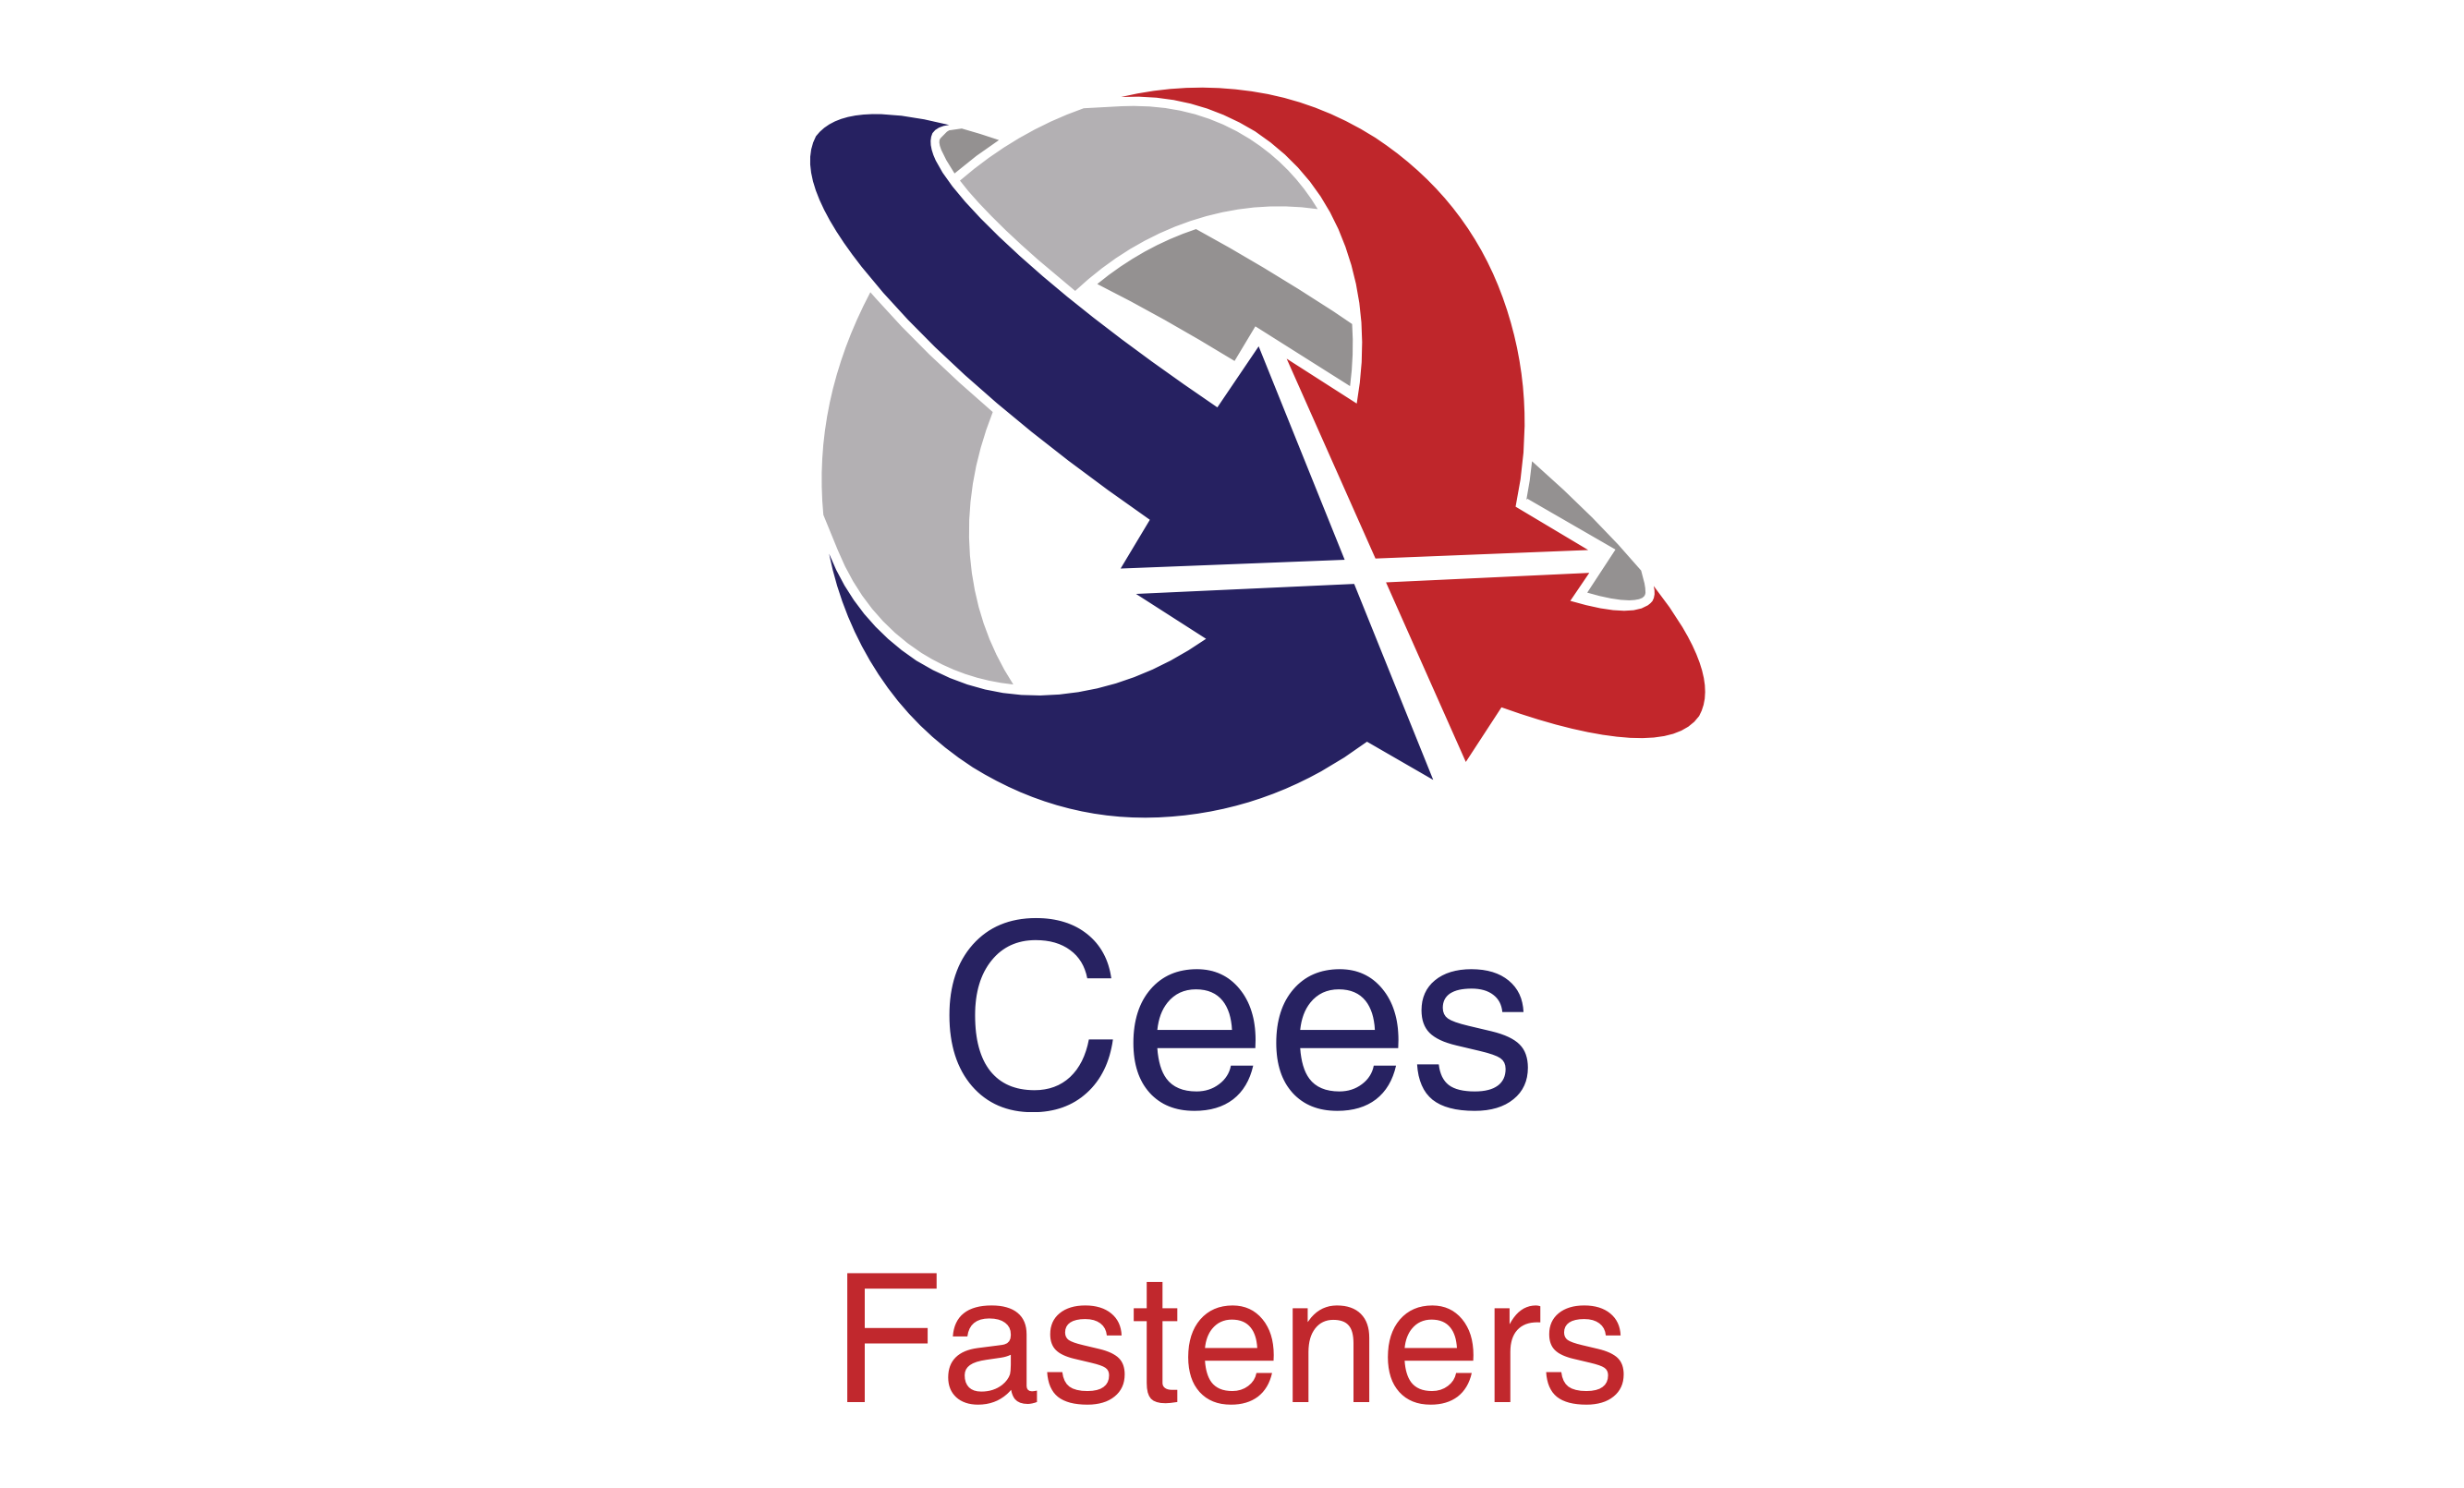 Cees Fasteners Ltd